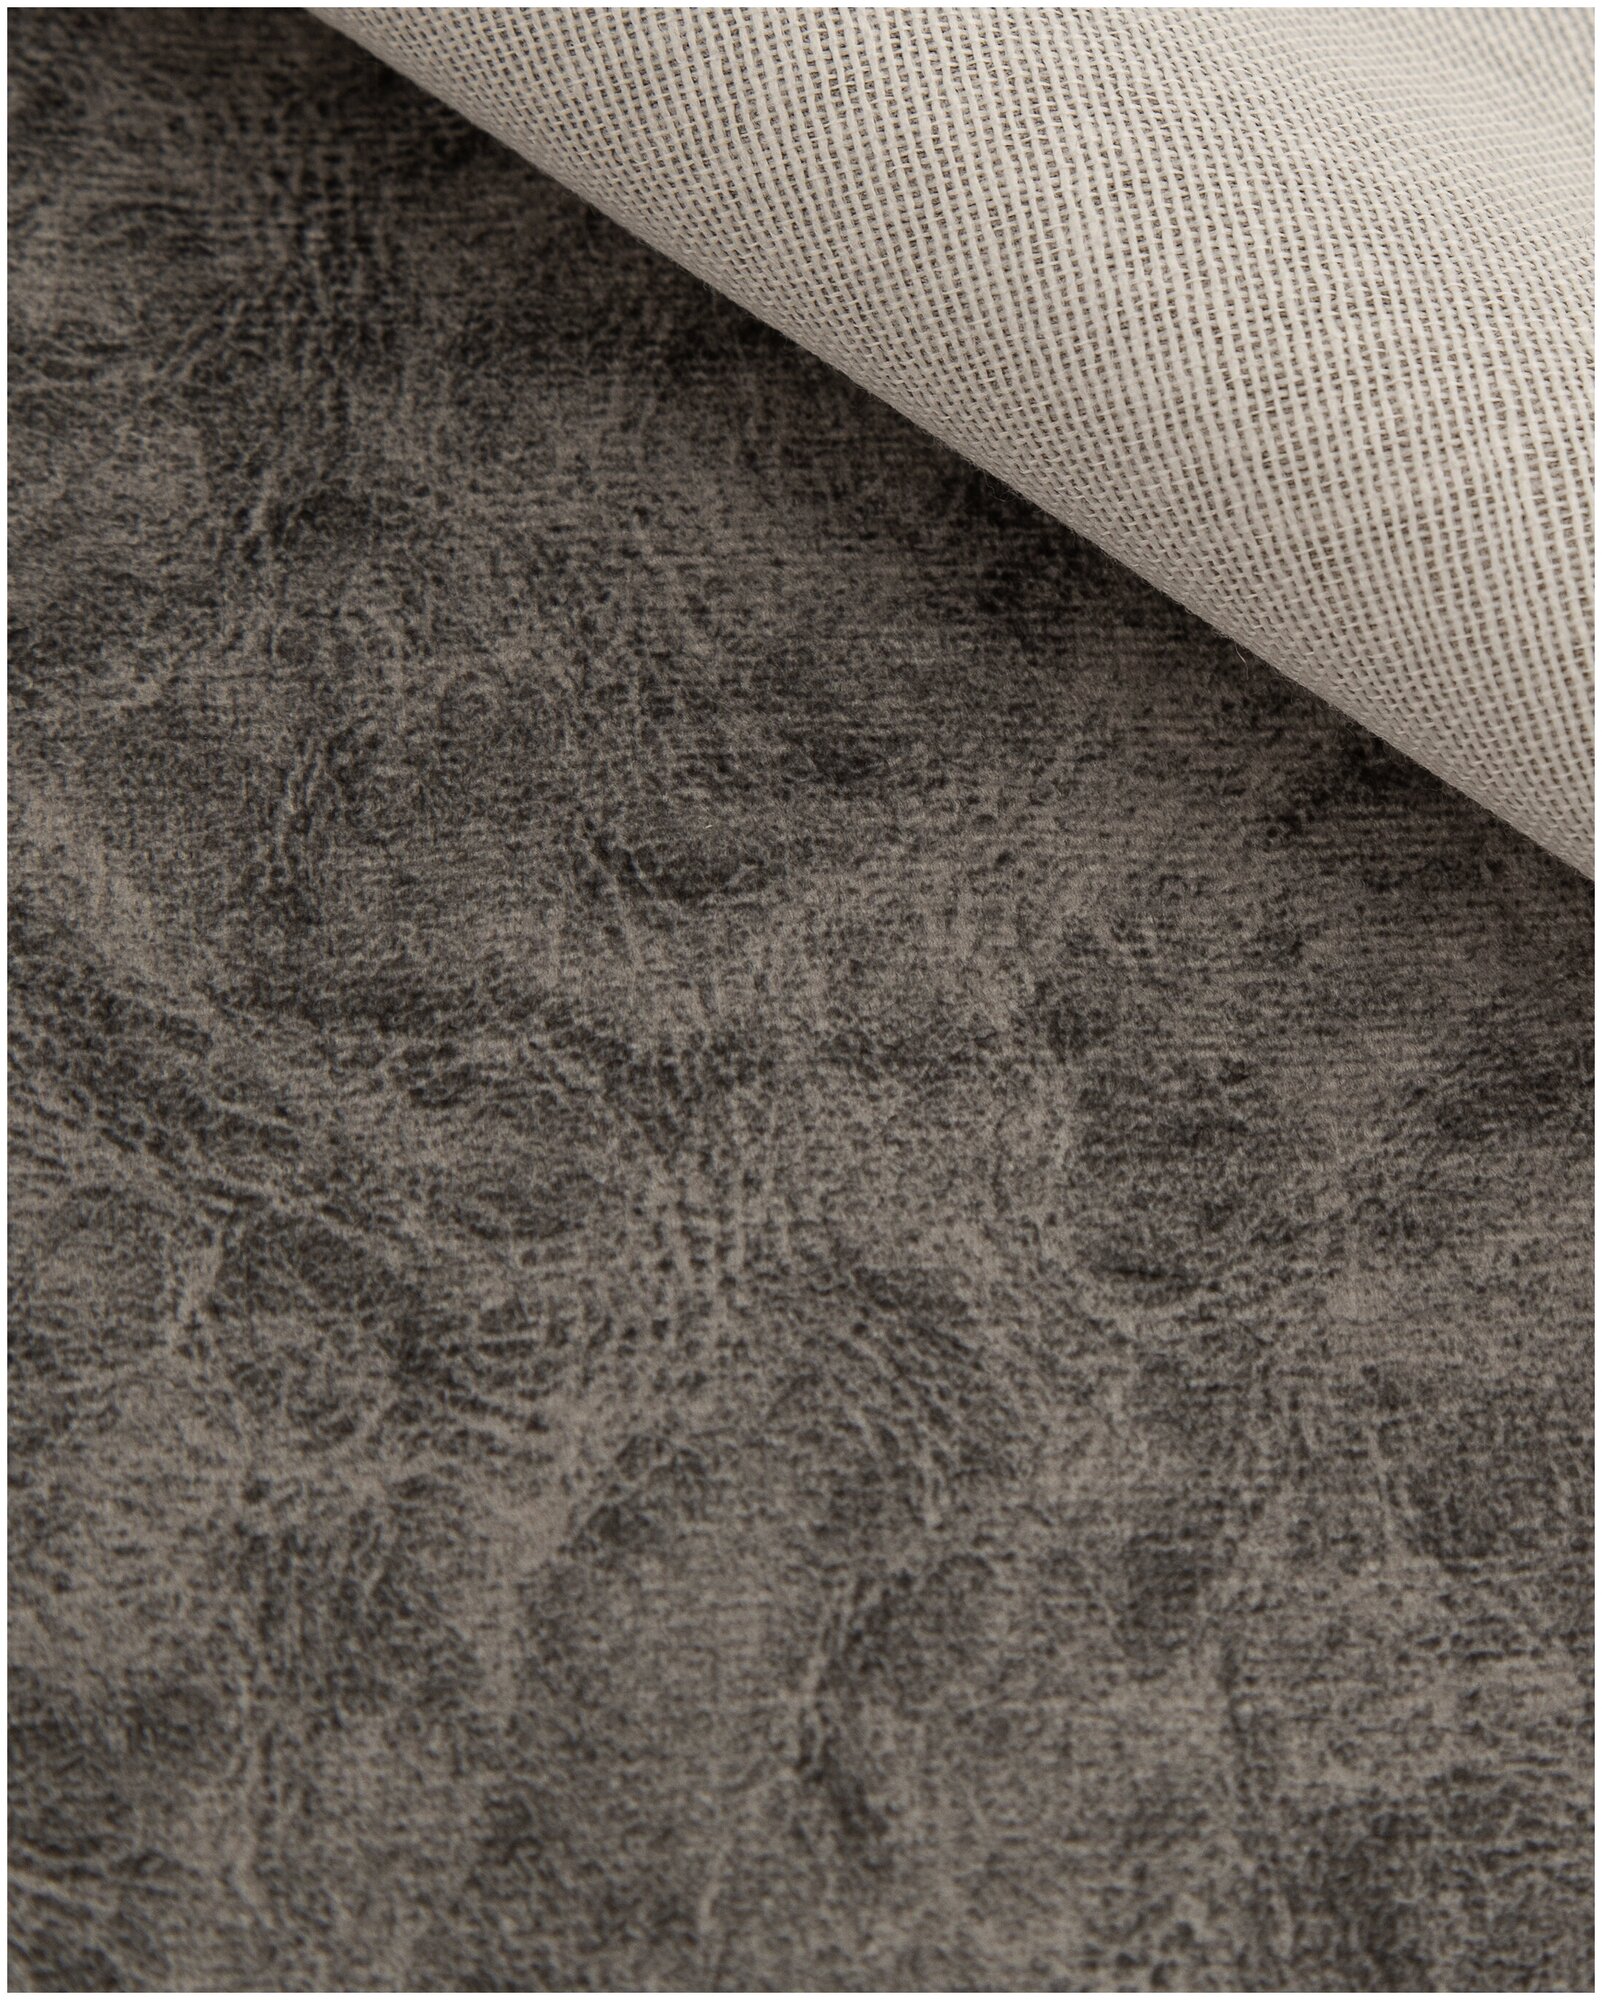 Ткань Велюр, модель Дарки, цвет Серый (6) (Ткань для шитья, для мебели)